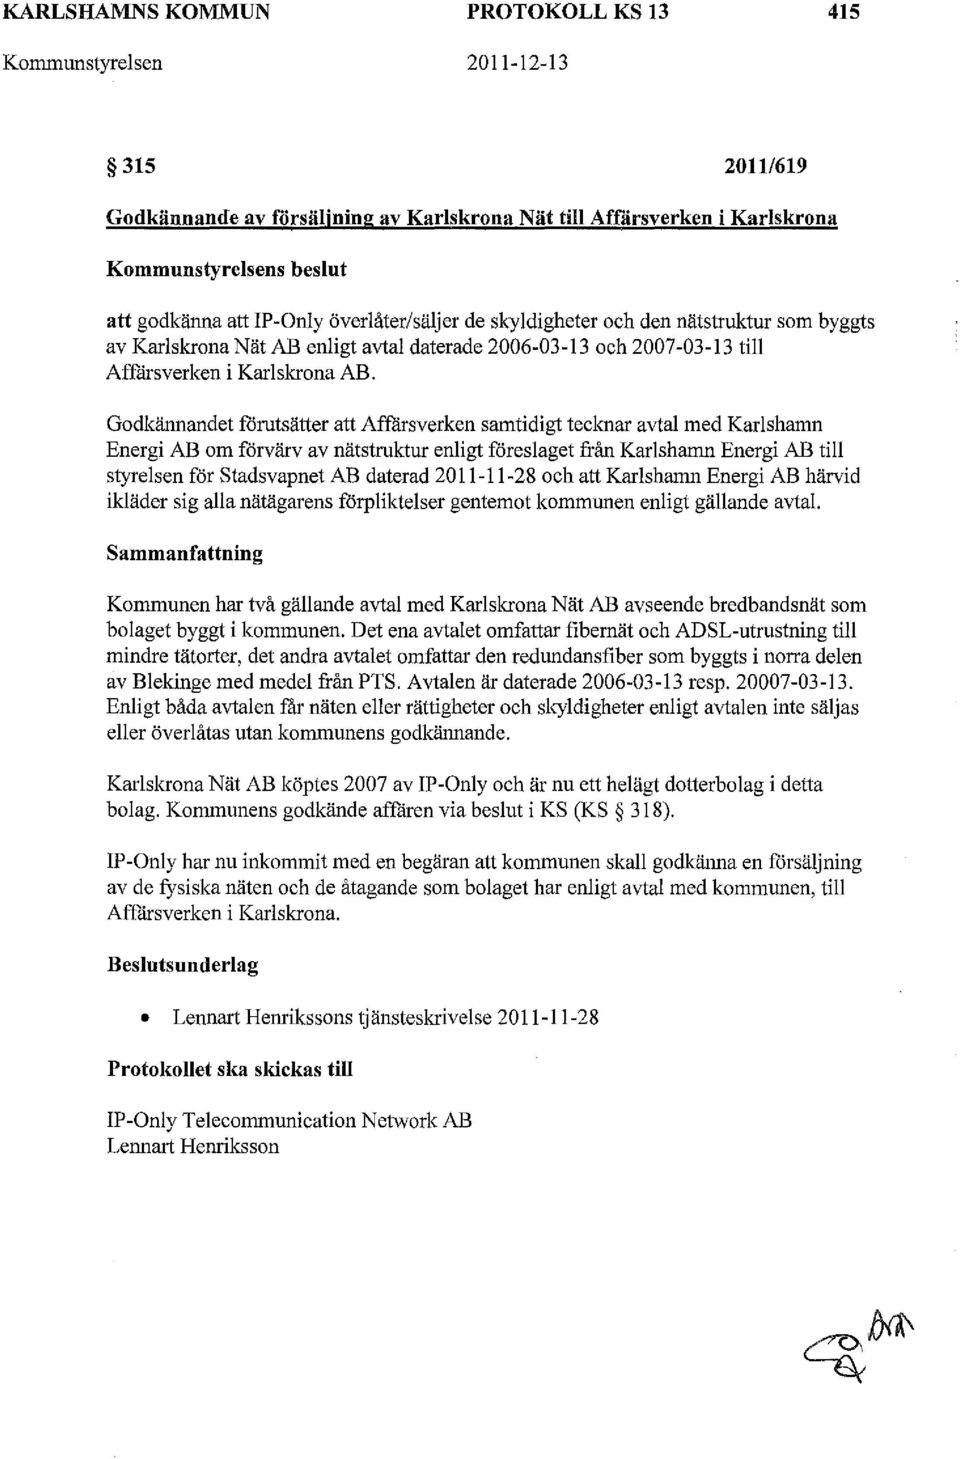 Godkännandet forutsätter att Affårsverken samtidigt tecknar avtal med Karlshamn Energi AB om förvärv av nätstruktur enligt föreslaget från Karlshamn Energi AB till styrelsen för stadsvapnet AB